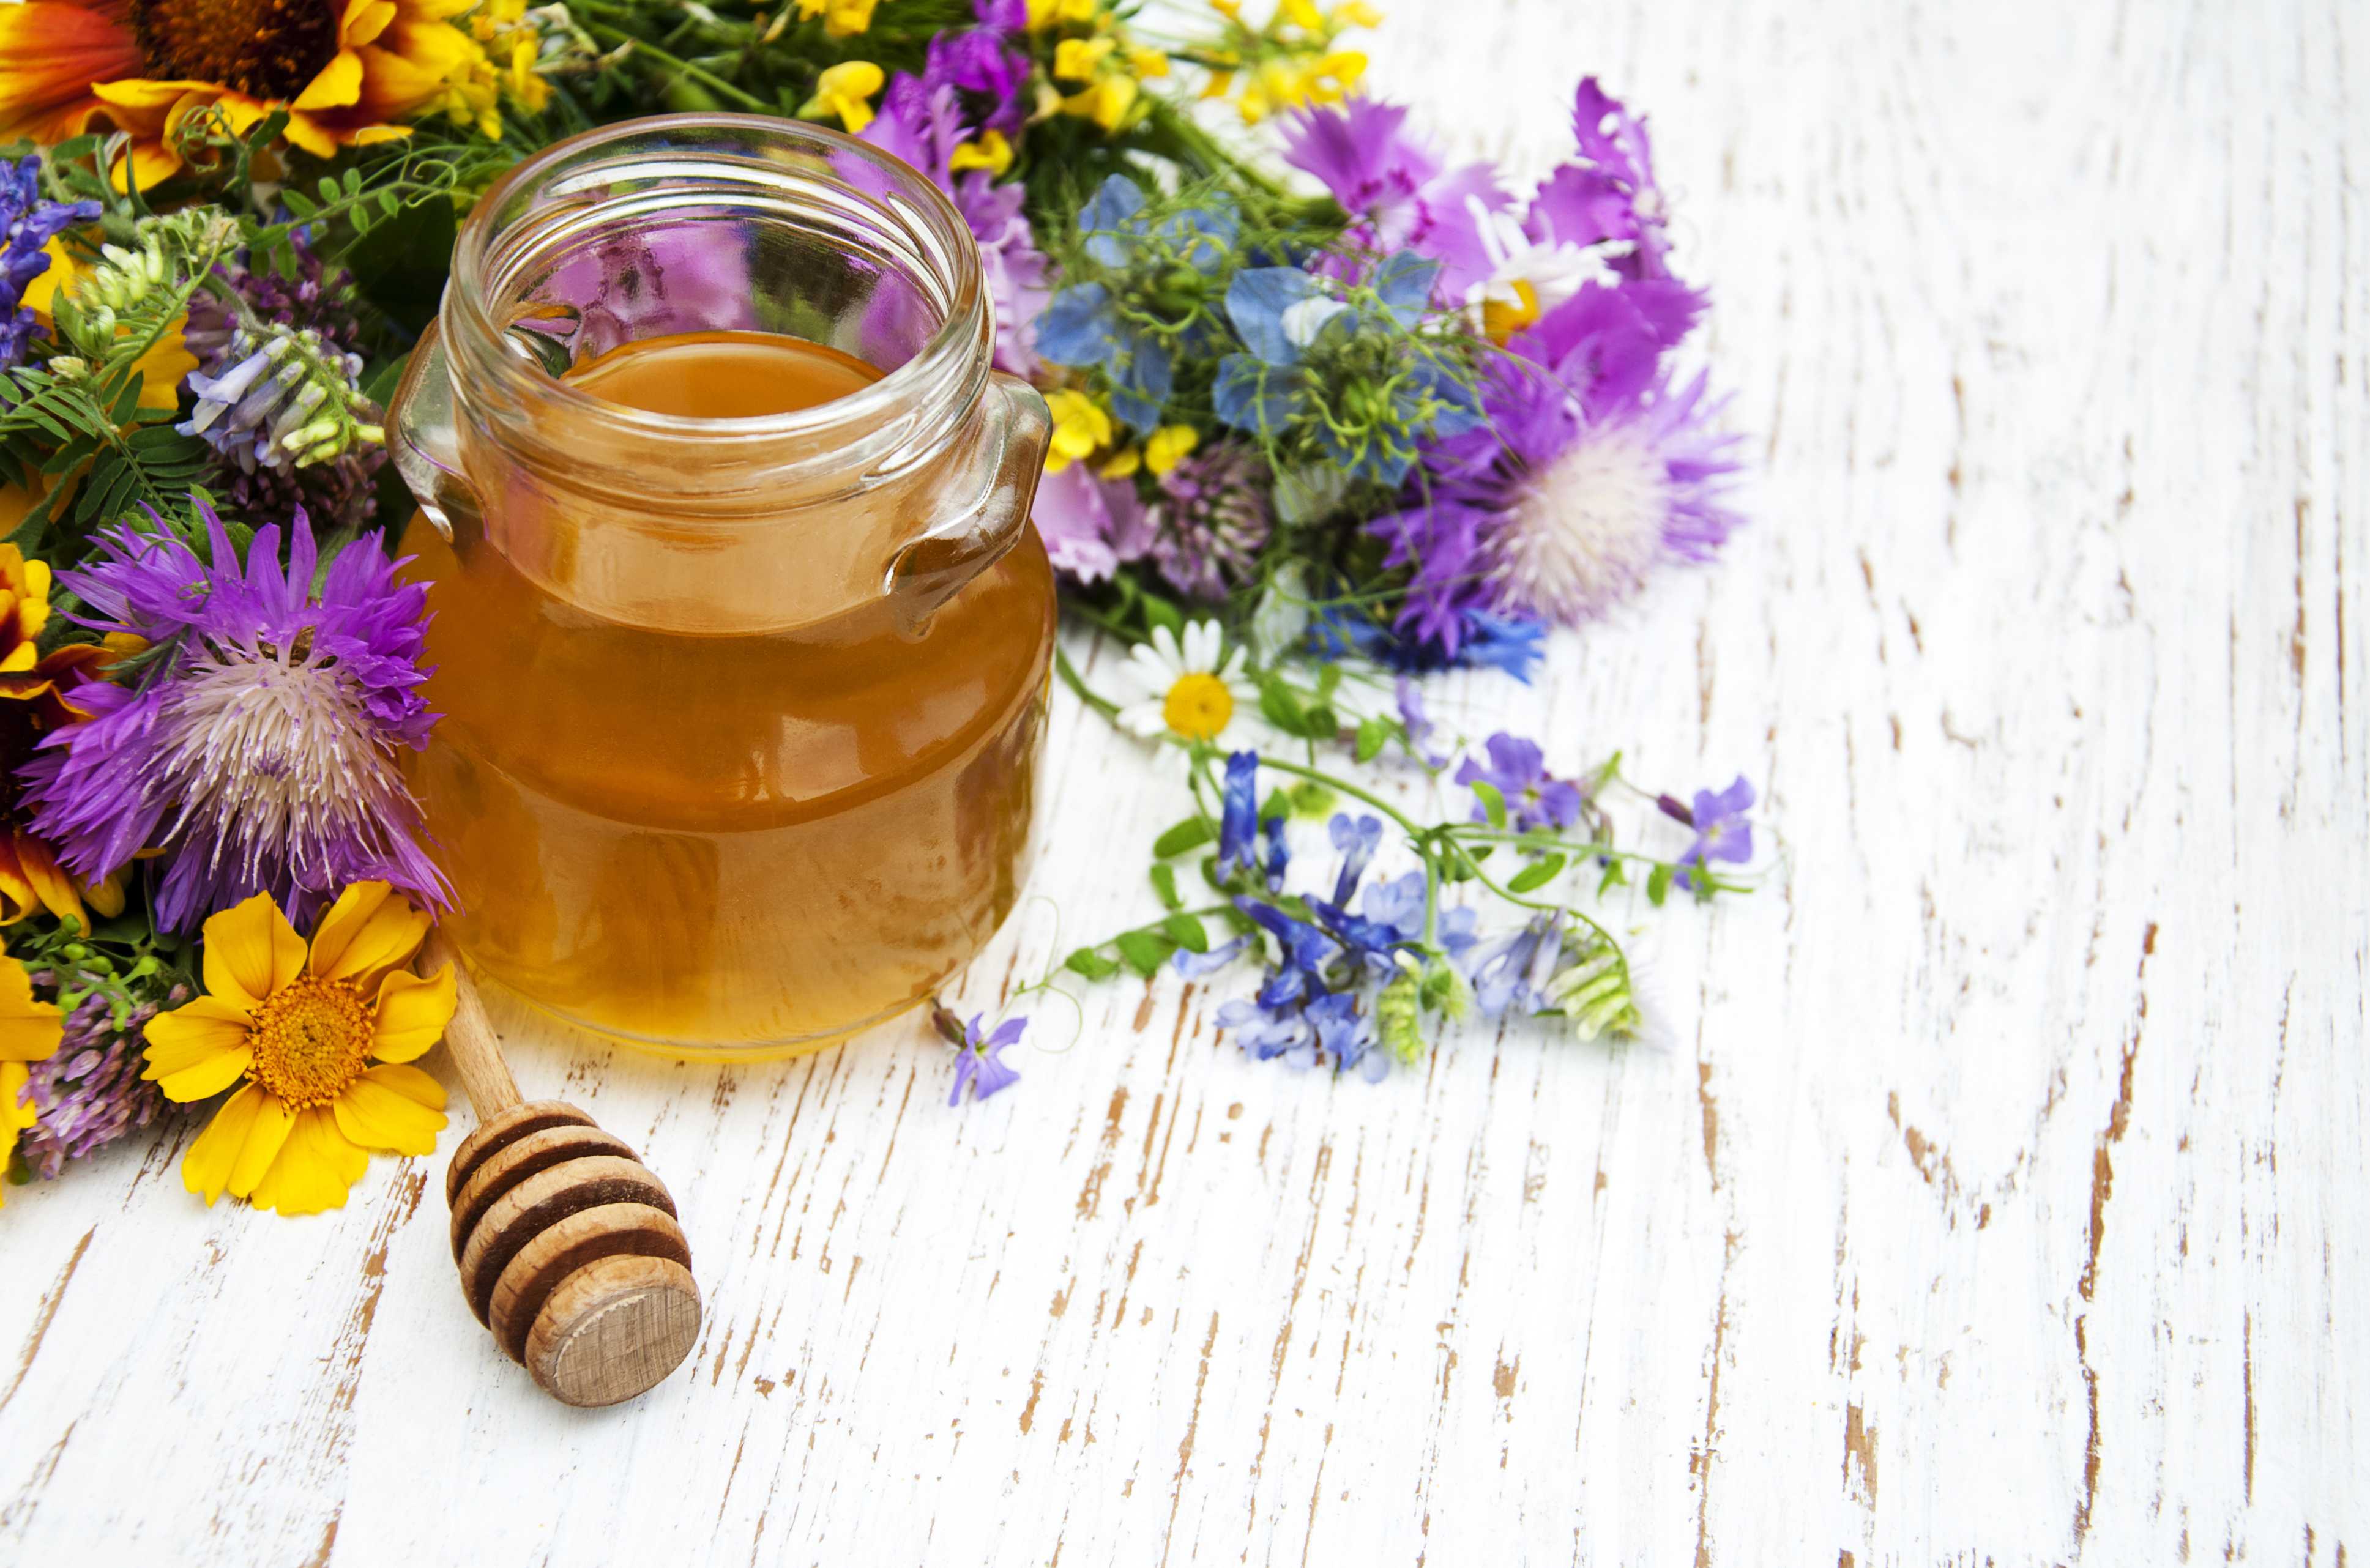 Seltene Honigsorten von 3Bee, nicht nur Manuka, sondern auch Linden-, Blüten-, Ailanthus- und Honigtauhonig aus biologischem Anbau